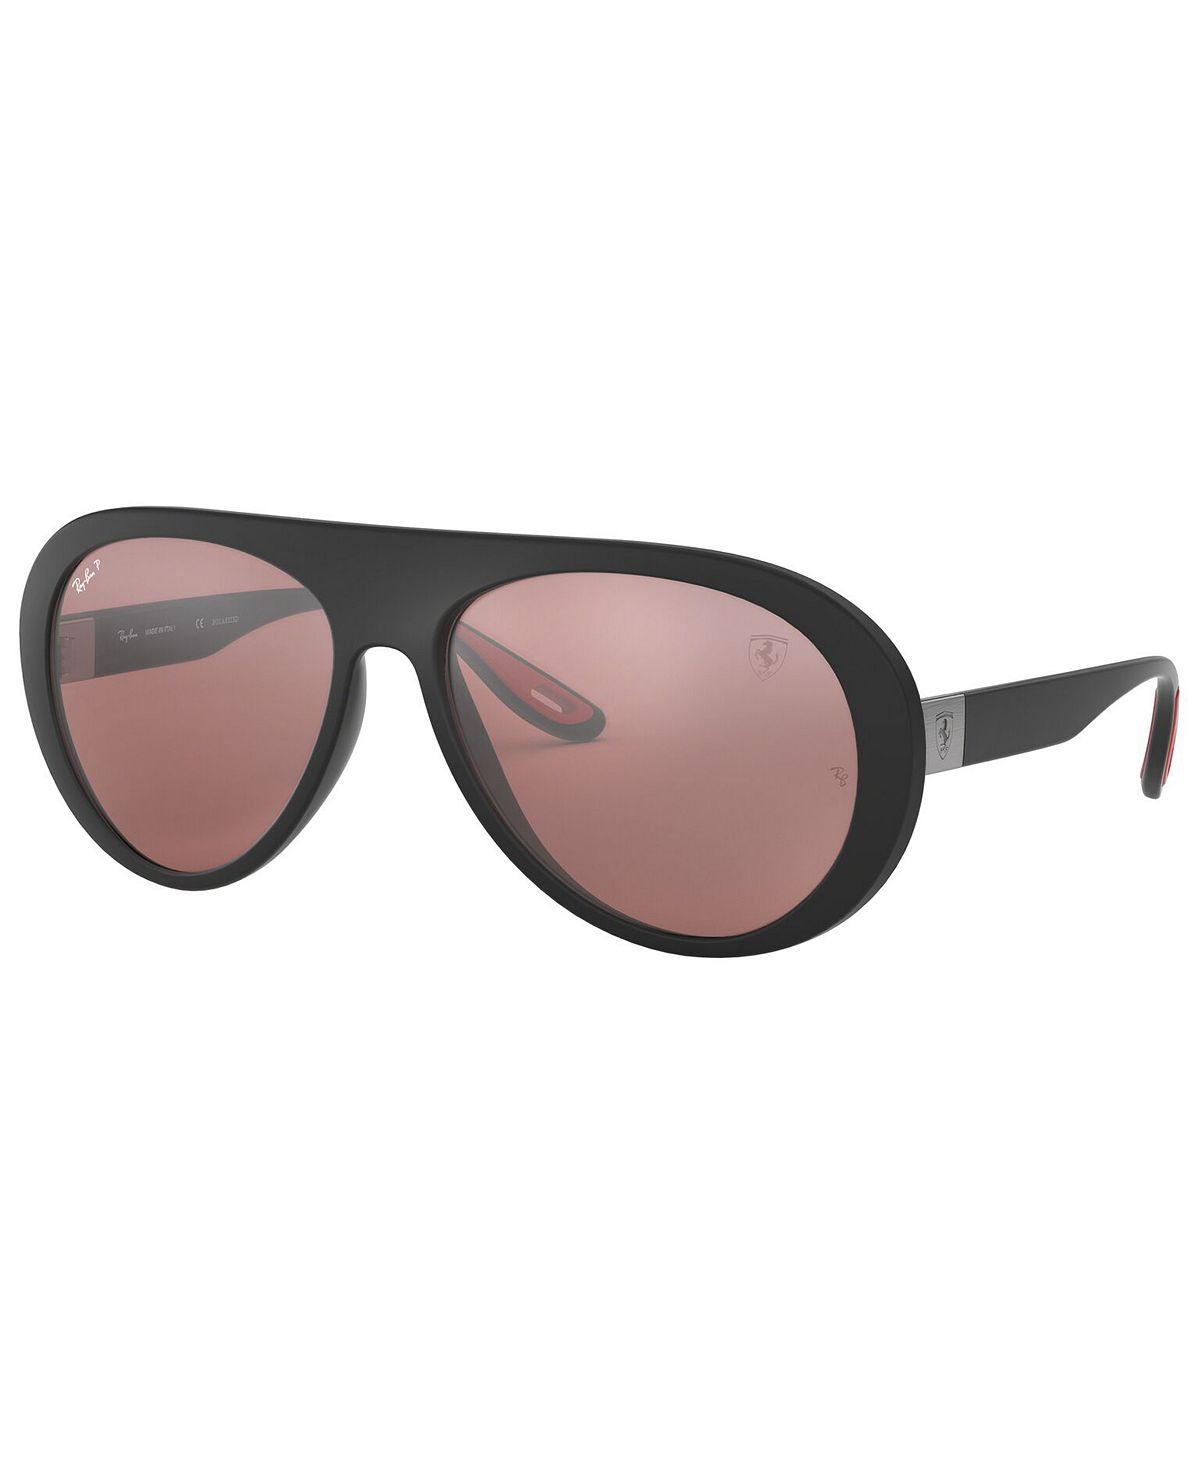 Мужские поляризованные солнцезащитные очки, rb4310m scuderia ferrari collection 58 Ray-Ban, мульти